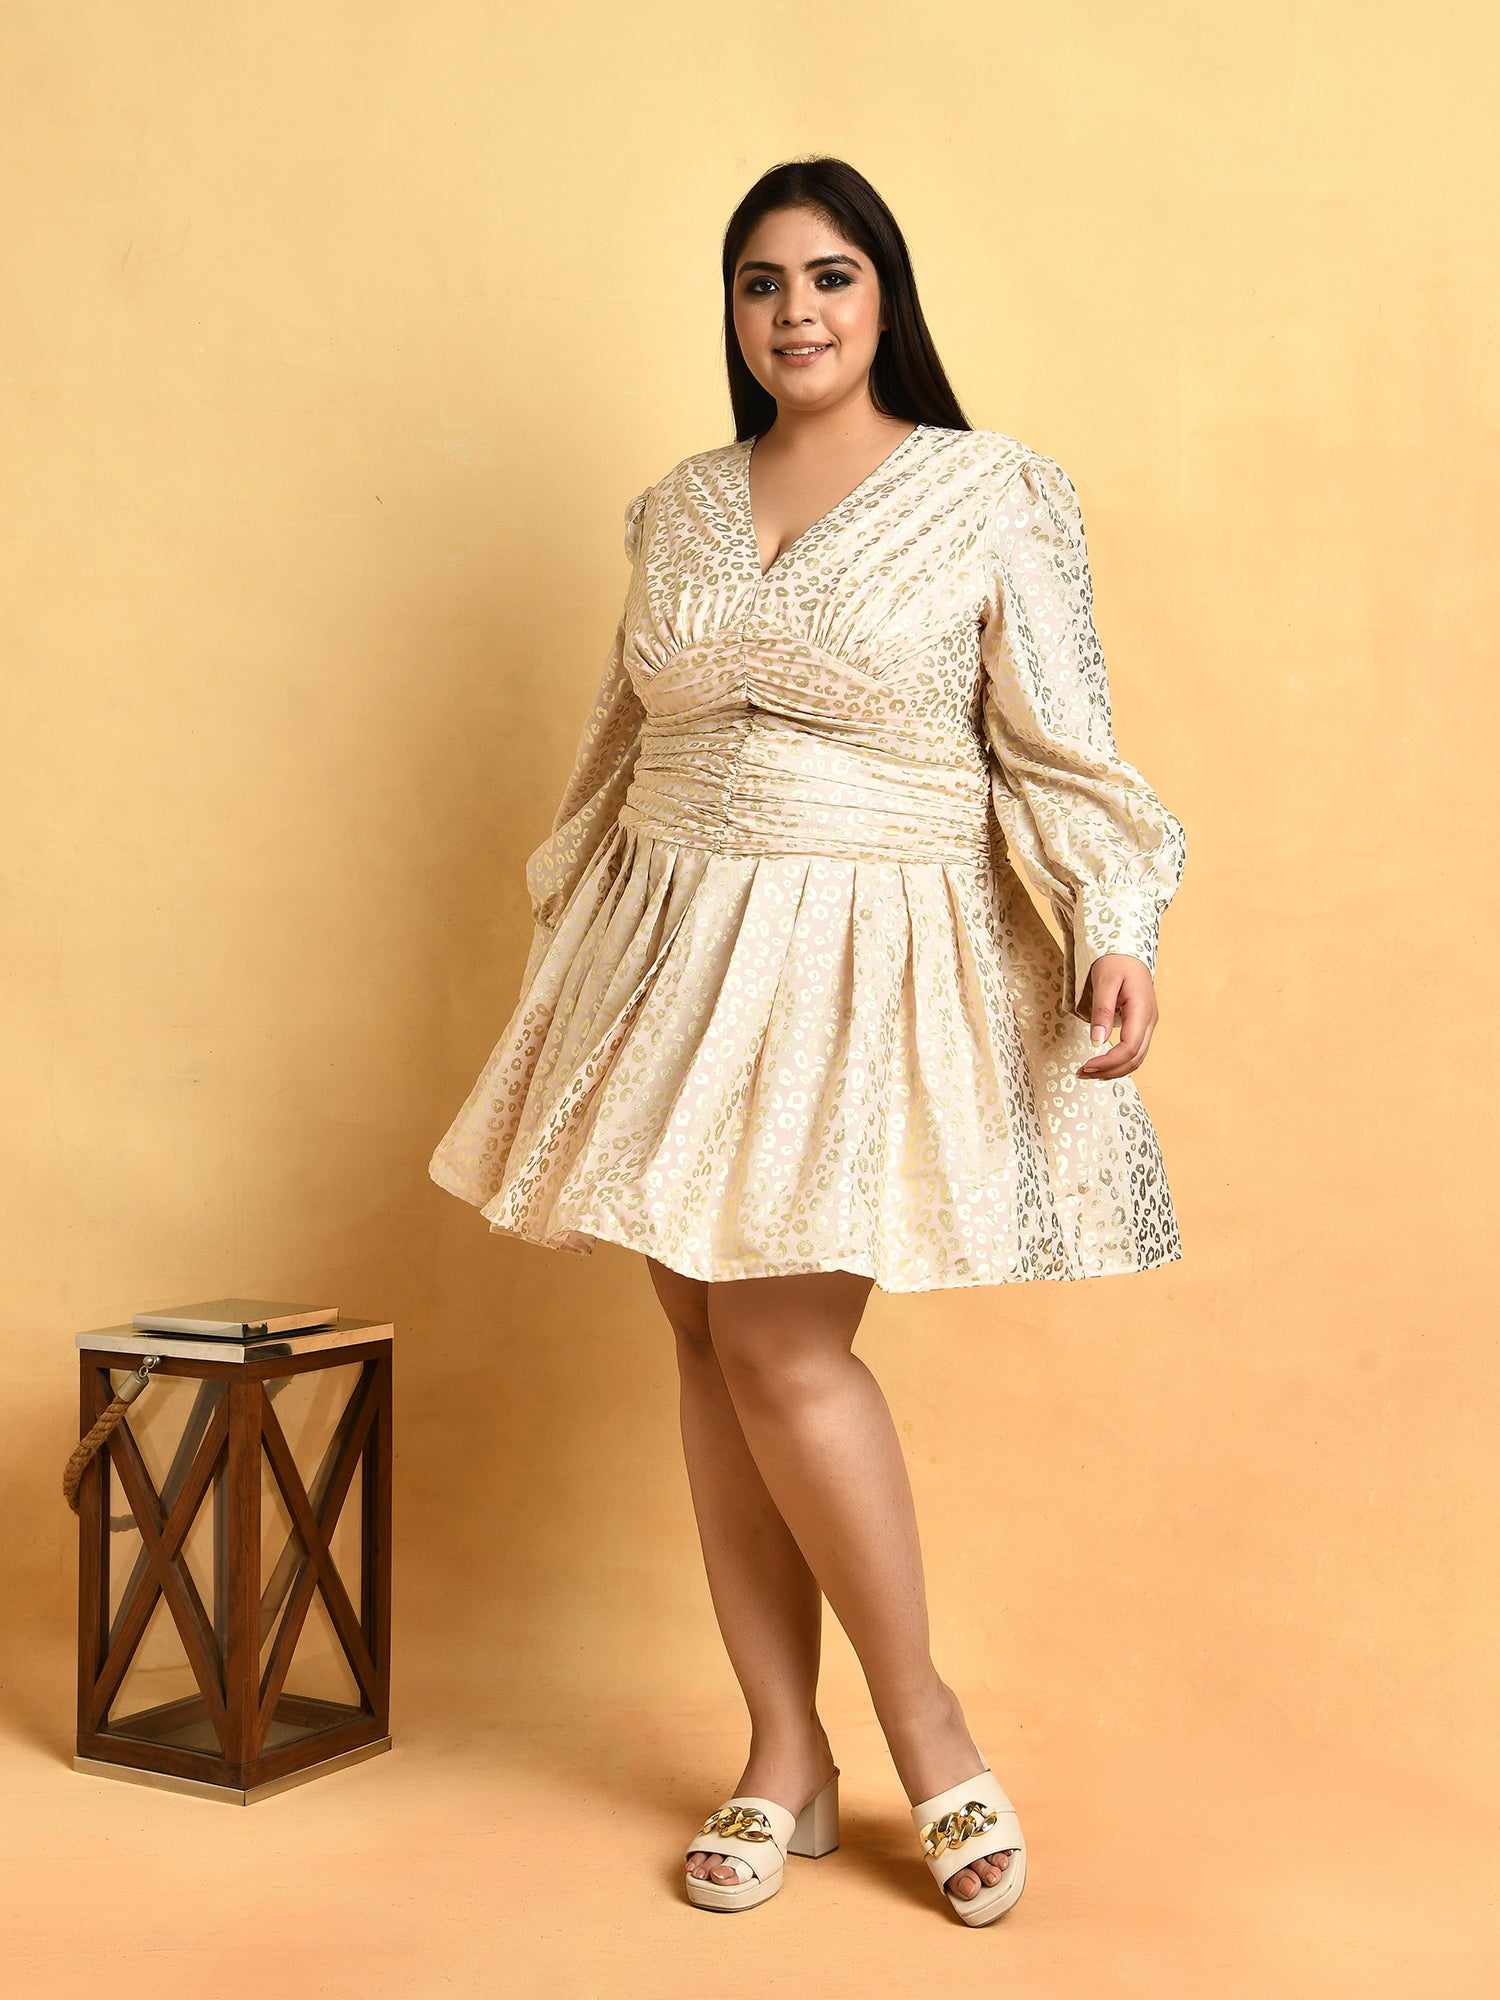 attic curves designer wear plus size dresses india